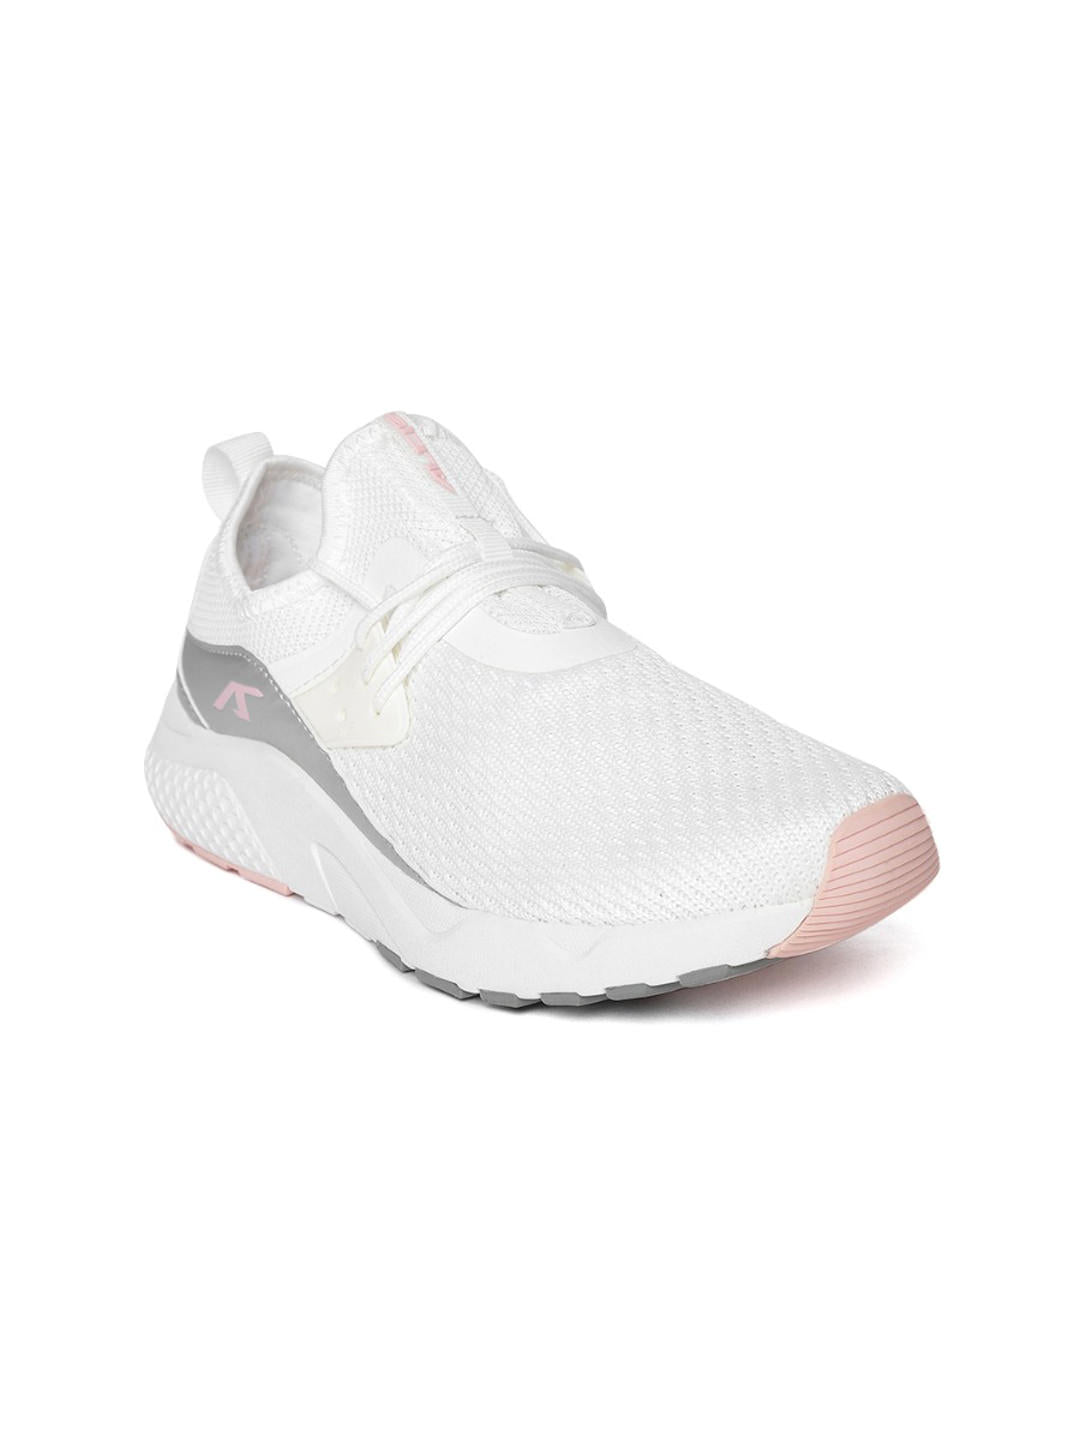 Alcis Womens White Running Shoes R8108201-UK-3-White